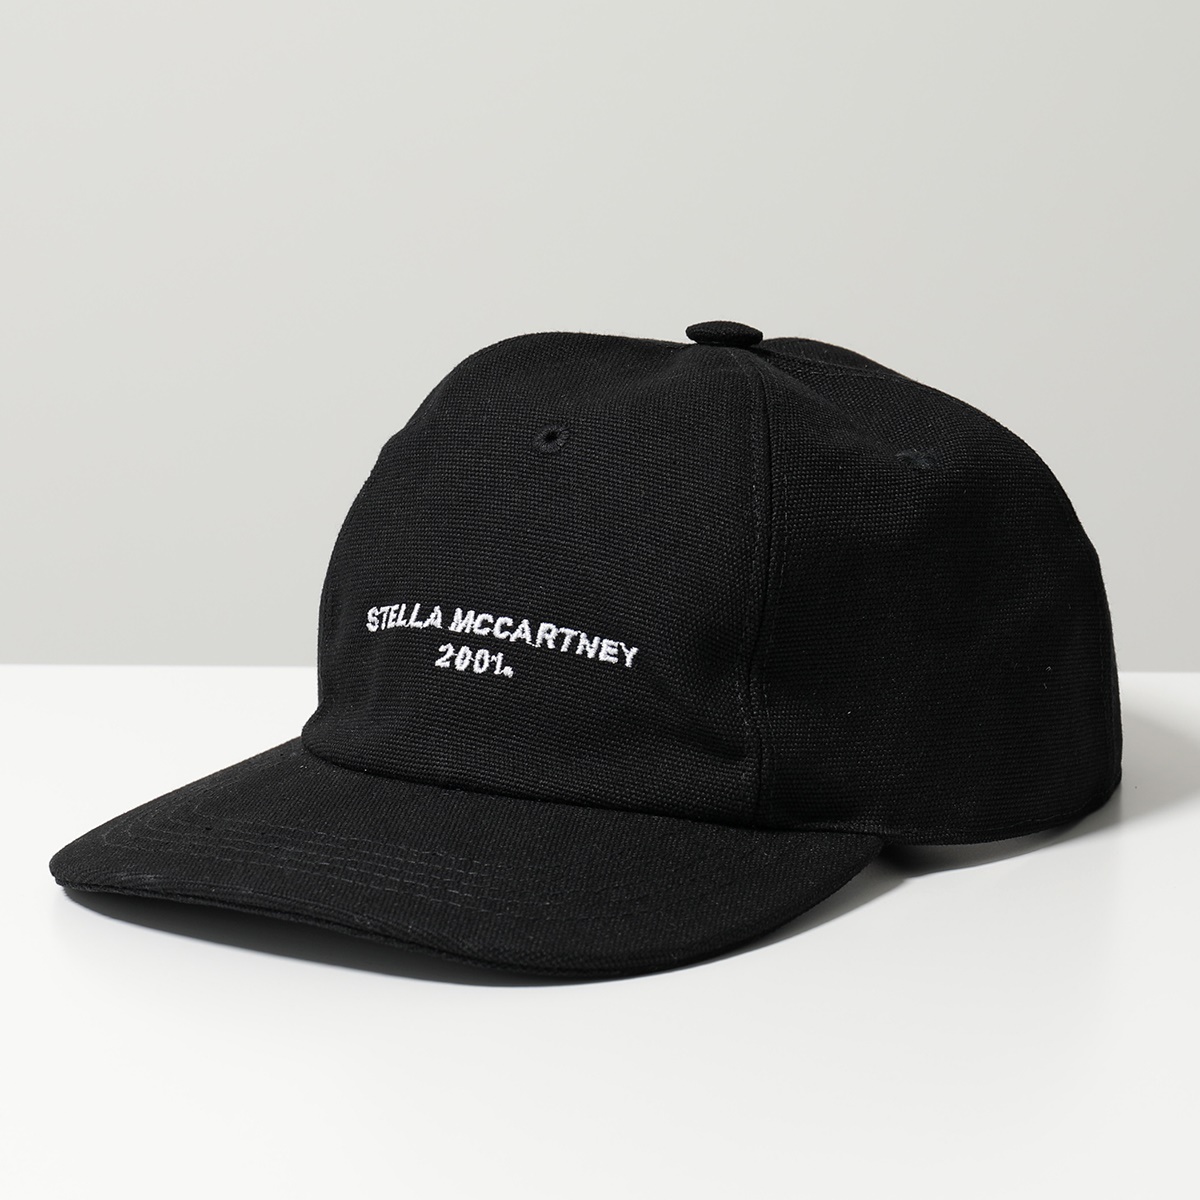 STELLA McCARTNEY ステラマッカートニー ベースボールキャップ 570194 WP0023 メンズ ロゴ刺繍 コットン 帽子 カラー2色